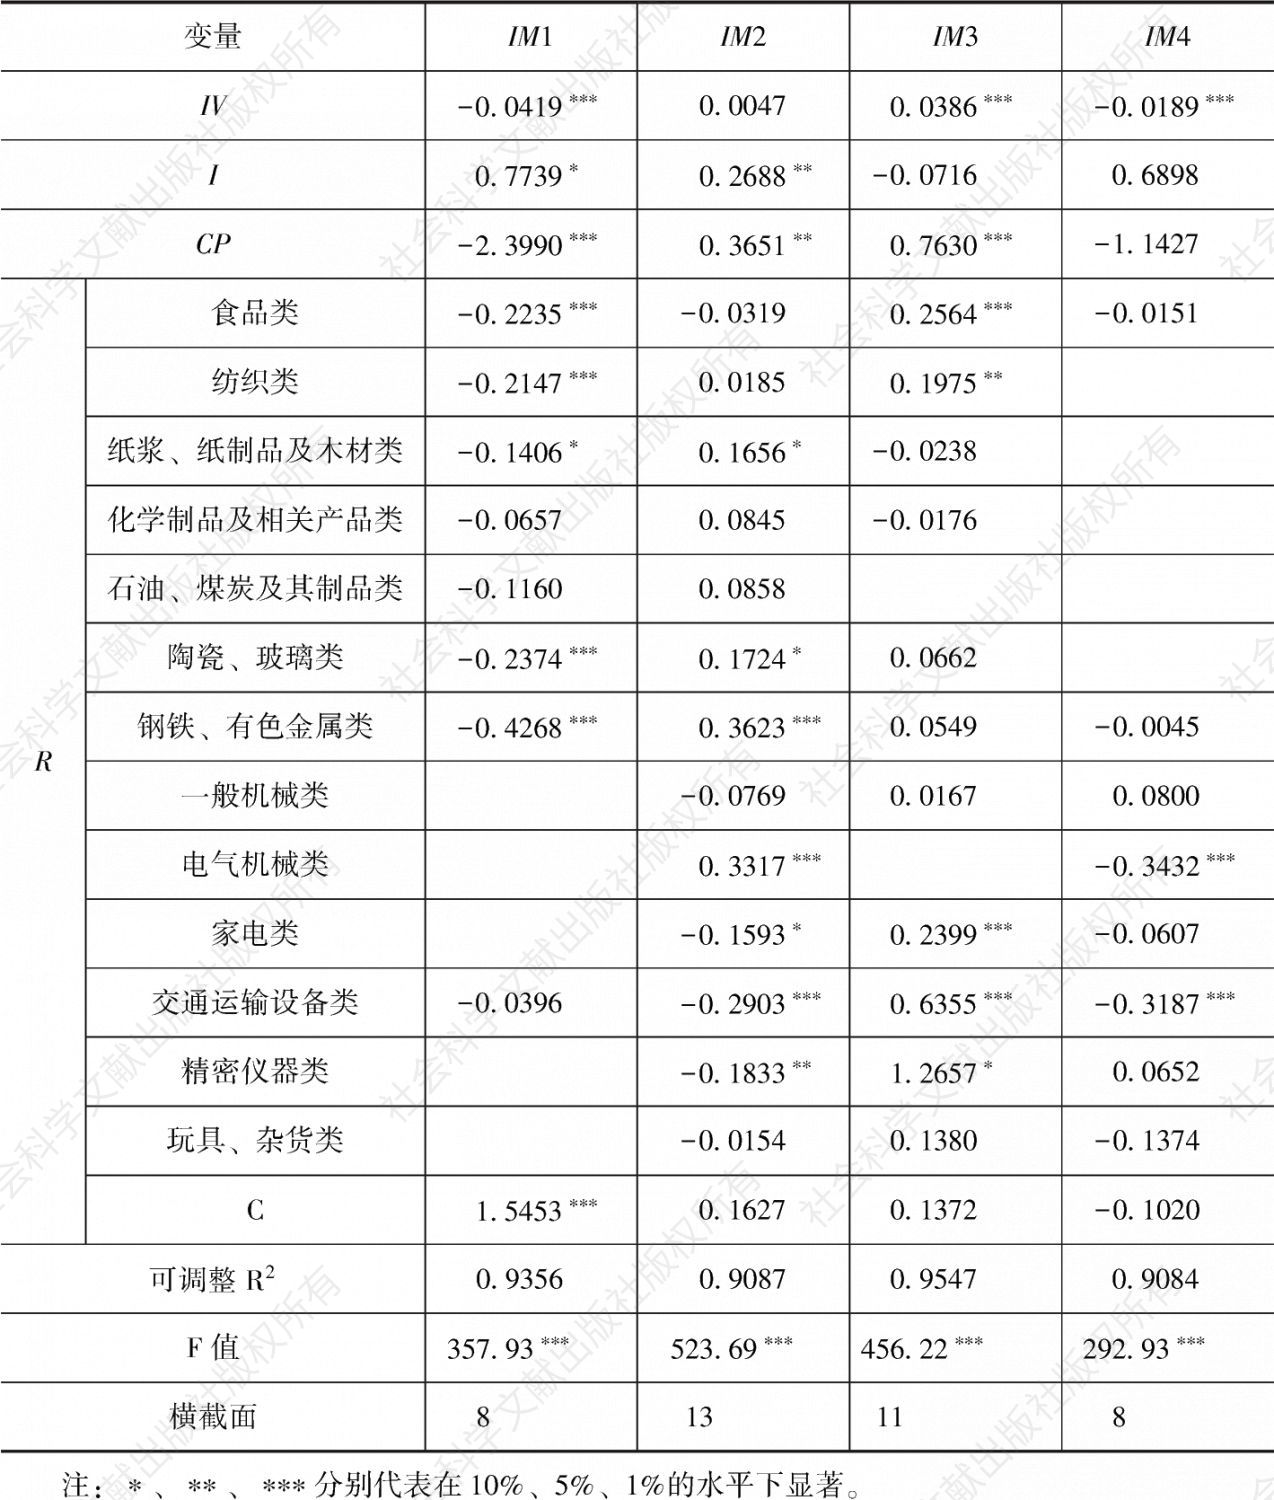 表6-3 日元实际有效汇率个体变系数模型估计结果